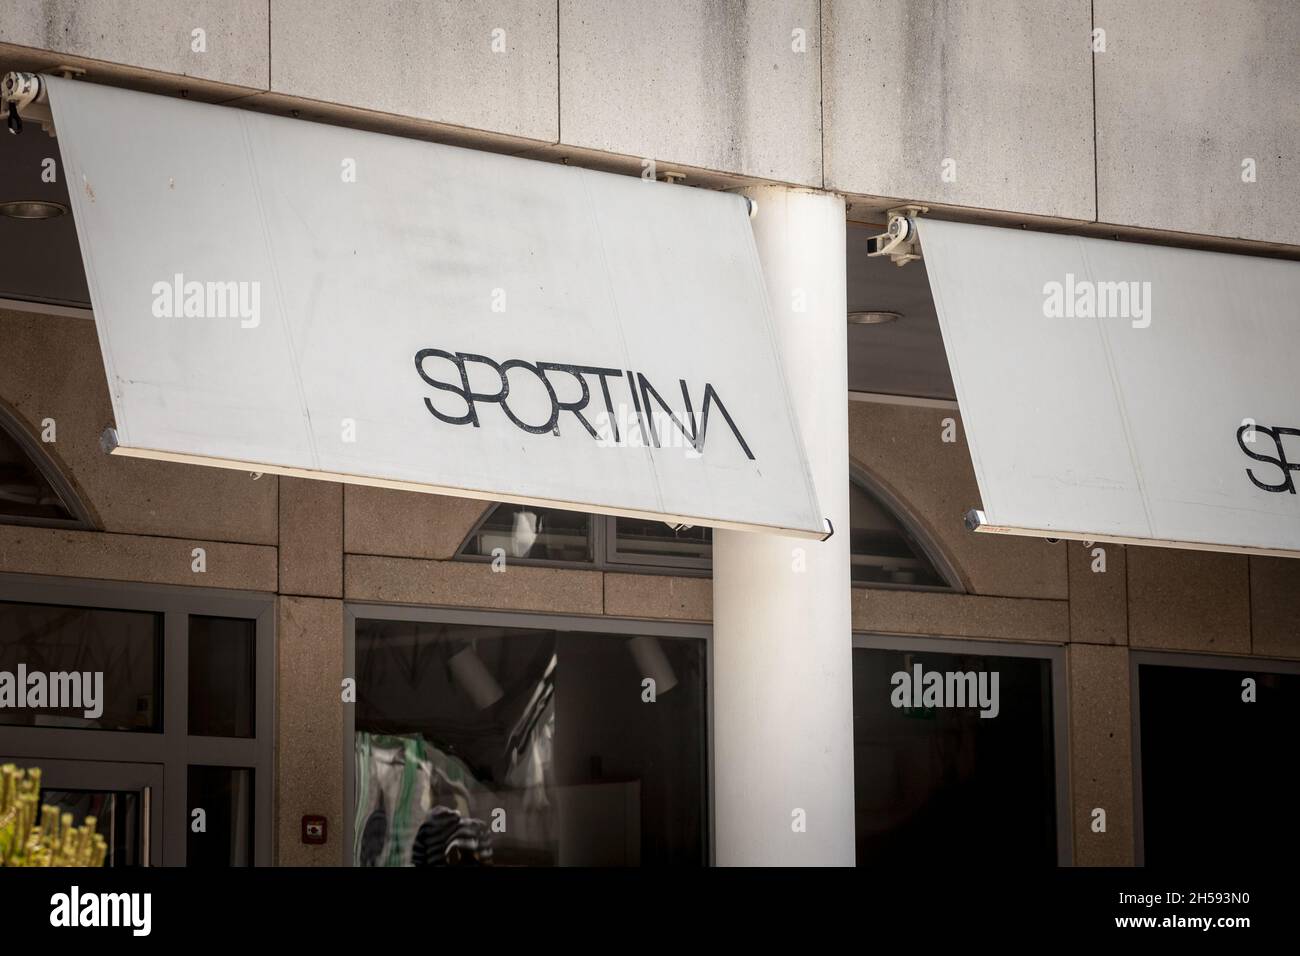 Bild eines Schildes mit dem Logo von Sportina, aufgenommen in ihrem lokalen Geschäft in Ljubljana, Slowenien. Sportina ist ein slowenisches Lifestyle-Bekleidungsunternehmen. Stockfoto